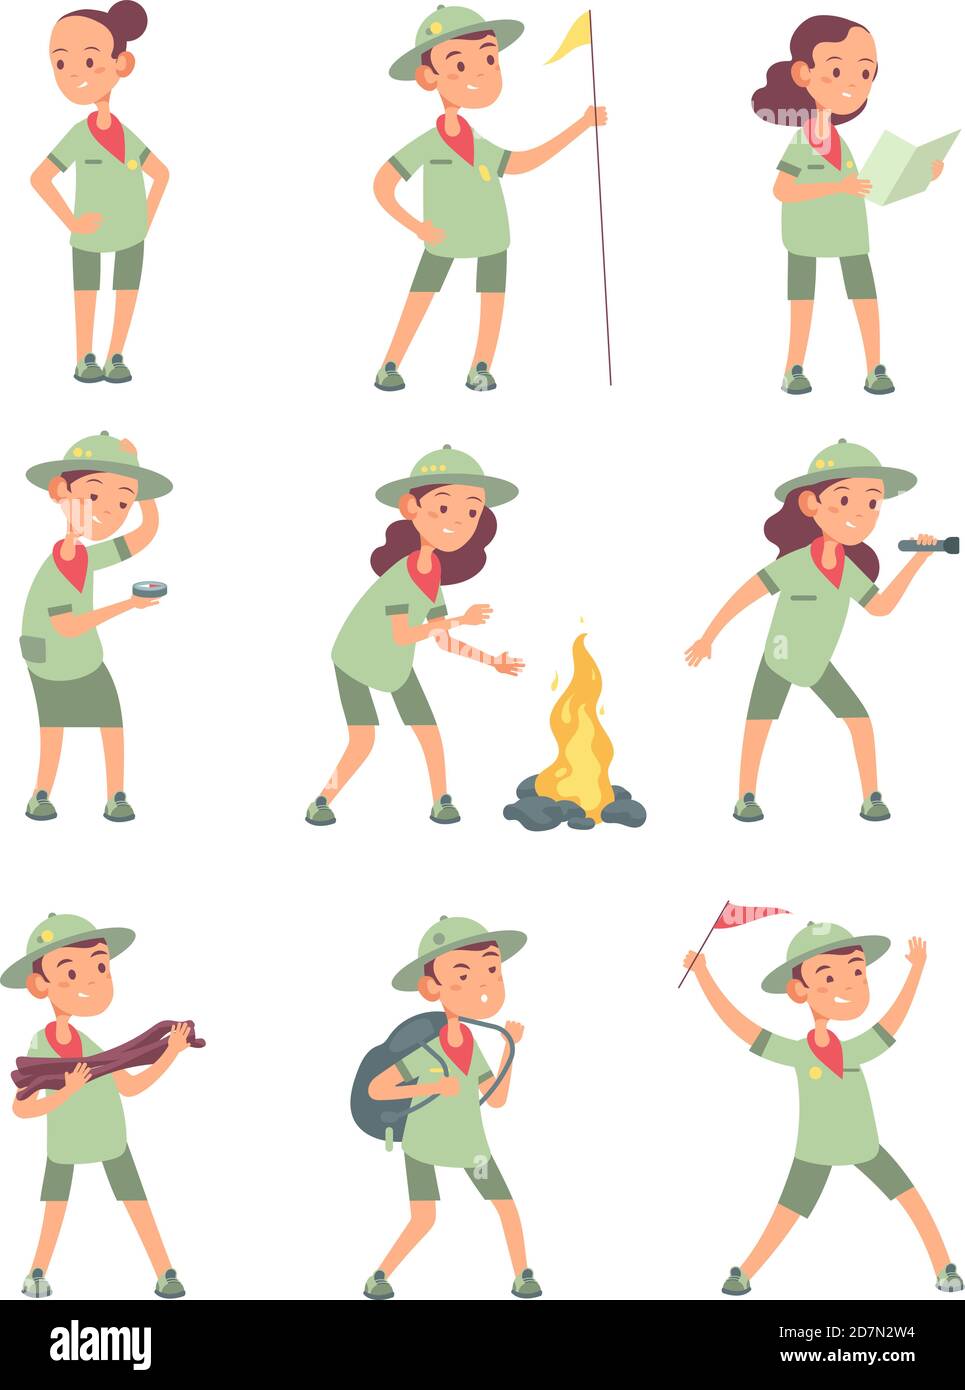 Kinder Scouts. Cartoon Kinder in Scout Uniform im Sommer Camping. Lustige Jungen und Mädchen touristischen Vektor-Zeichen. Illustration von Jungen und Mädchen in Uniform Scout Stock Vektor